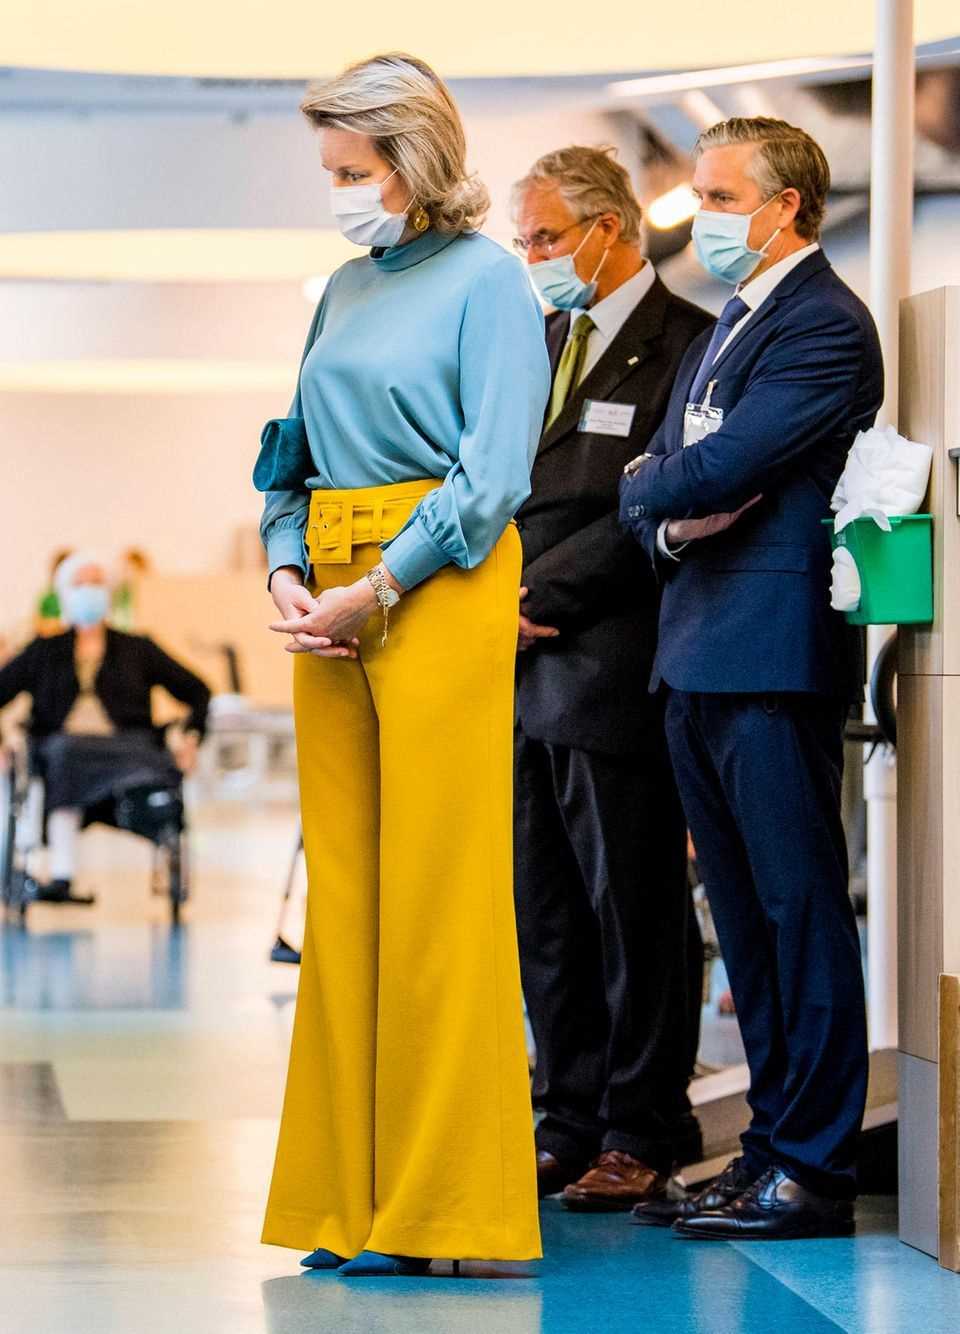 Queen Mathilde visiting a hospital